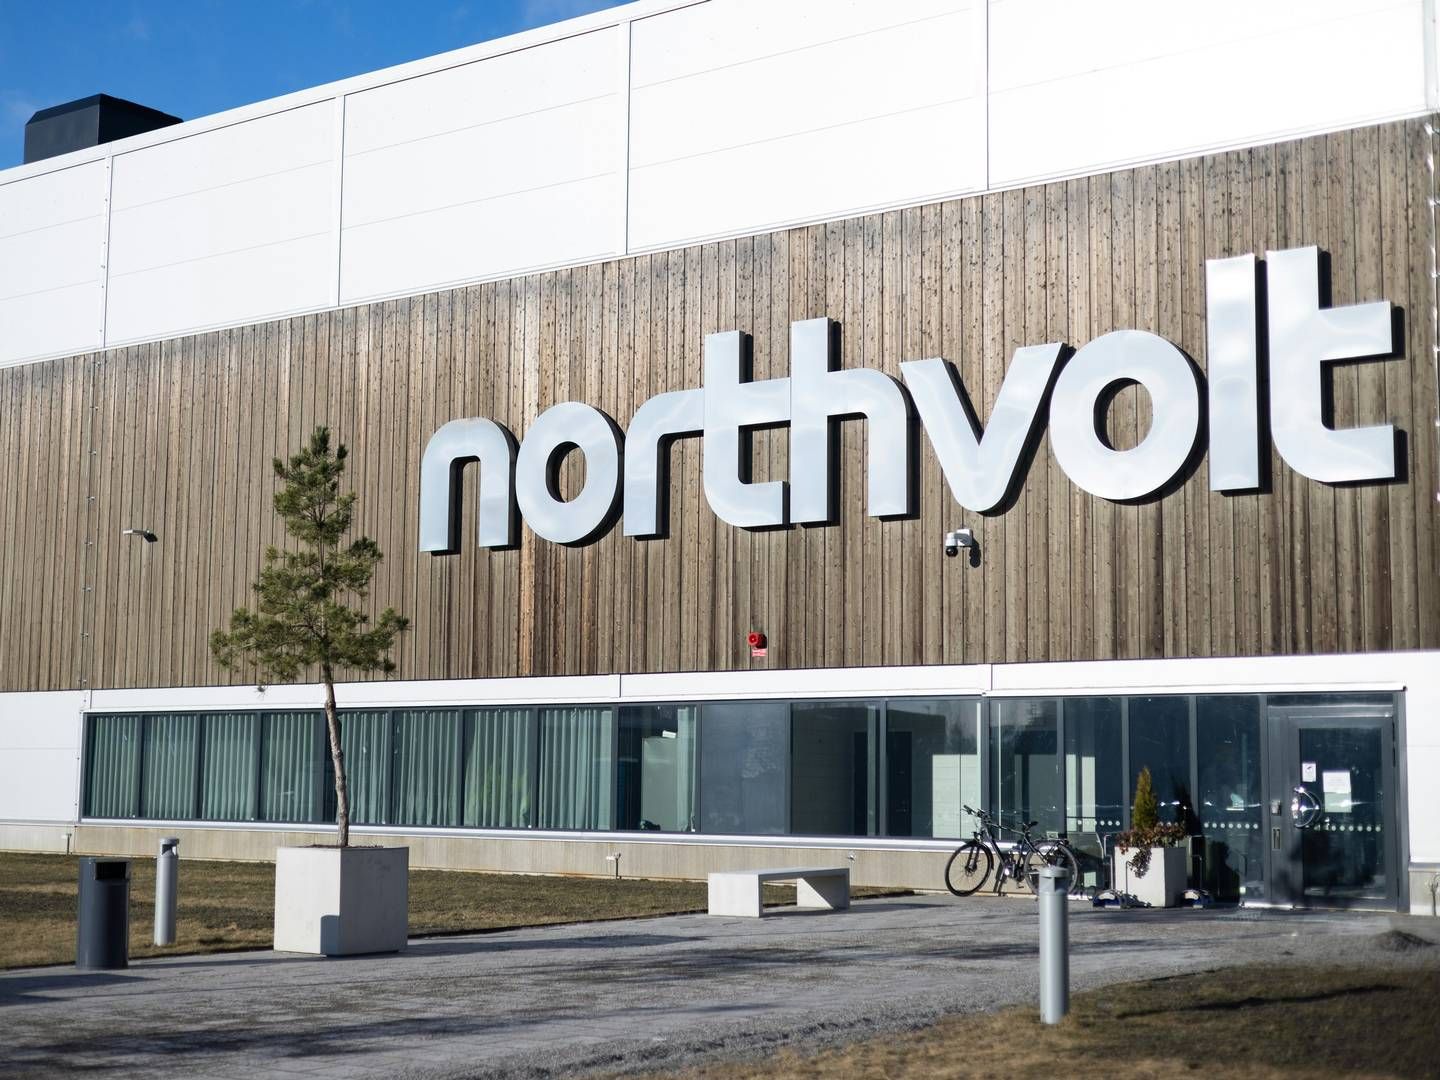 Northvolt Labs in Västerås, Sweden.